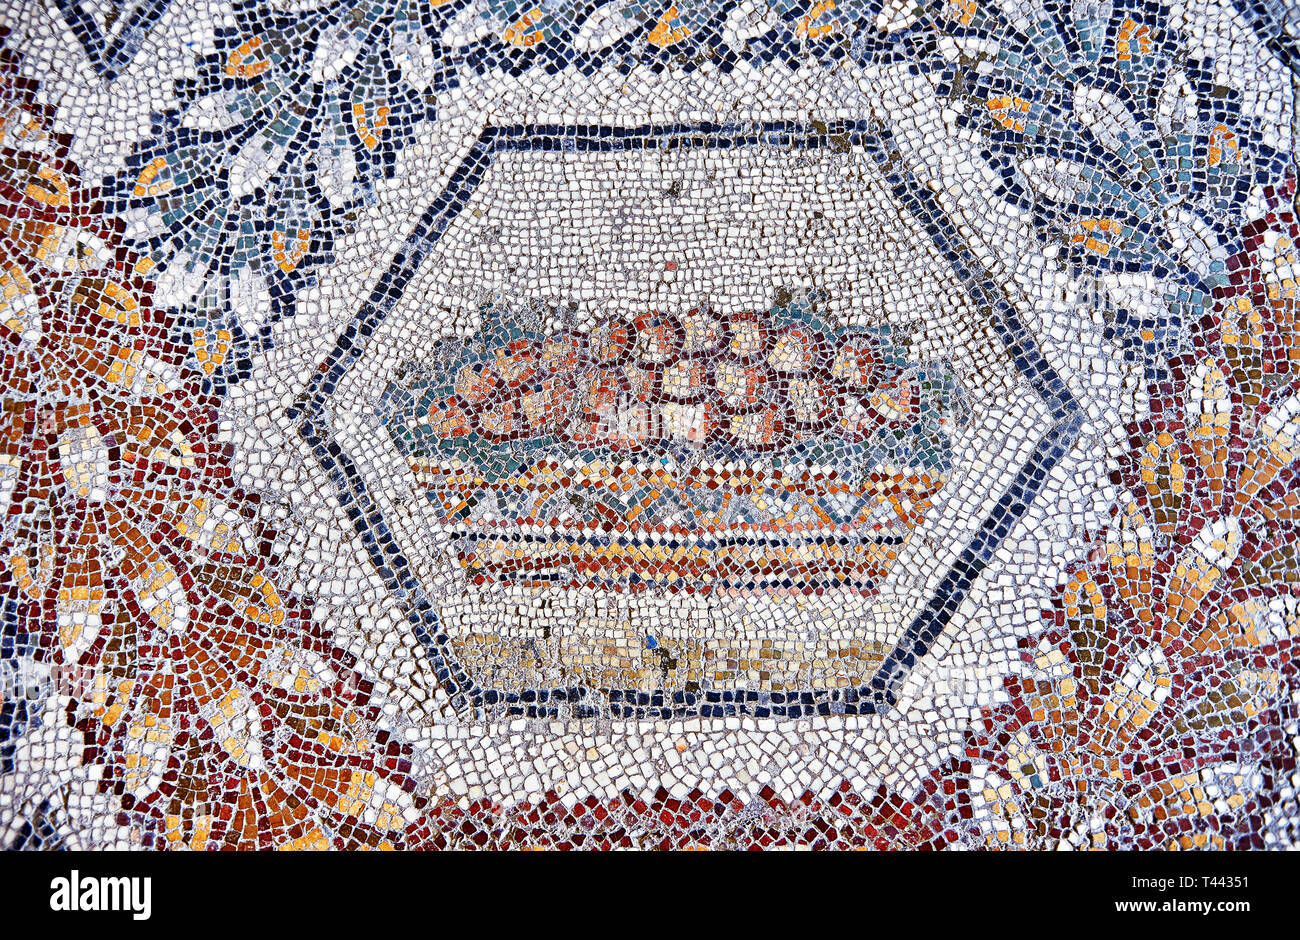 3e siècle mosaïque romaine de bord de fruits dans un panier de Thugga, en Tunisie. Le Musée du Bardo, Tunis, Tunisie. Banque D'Images